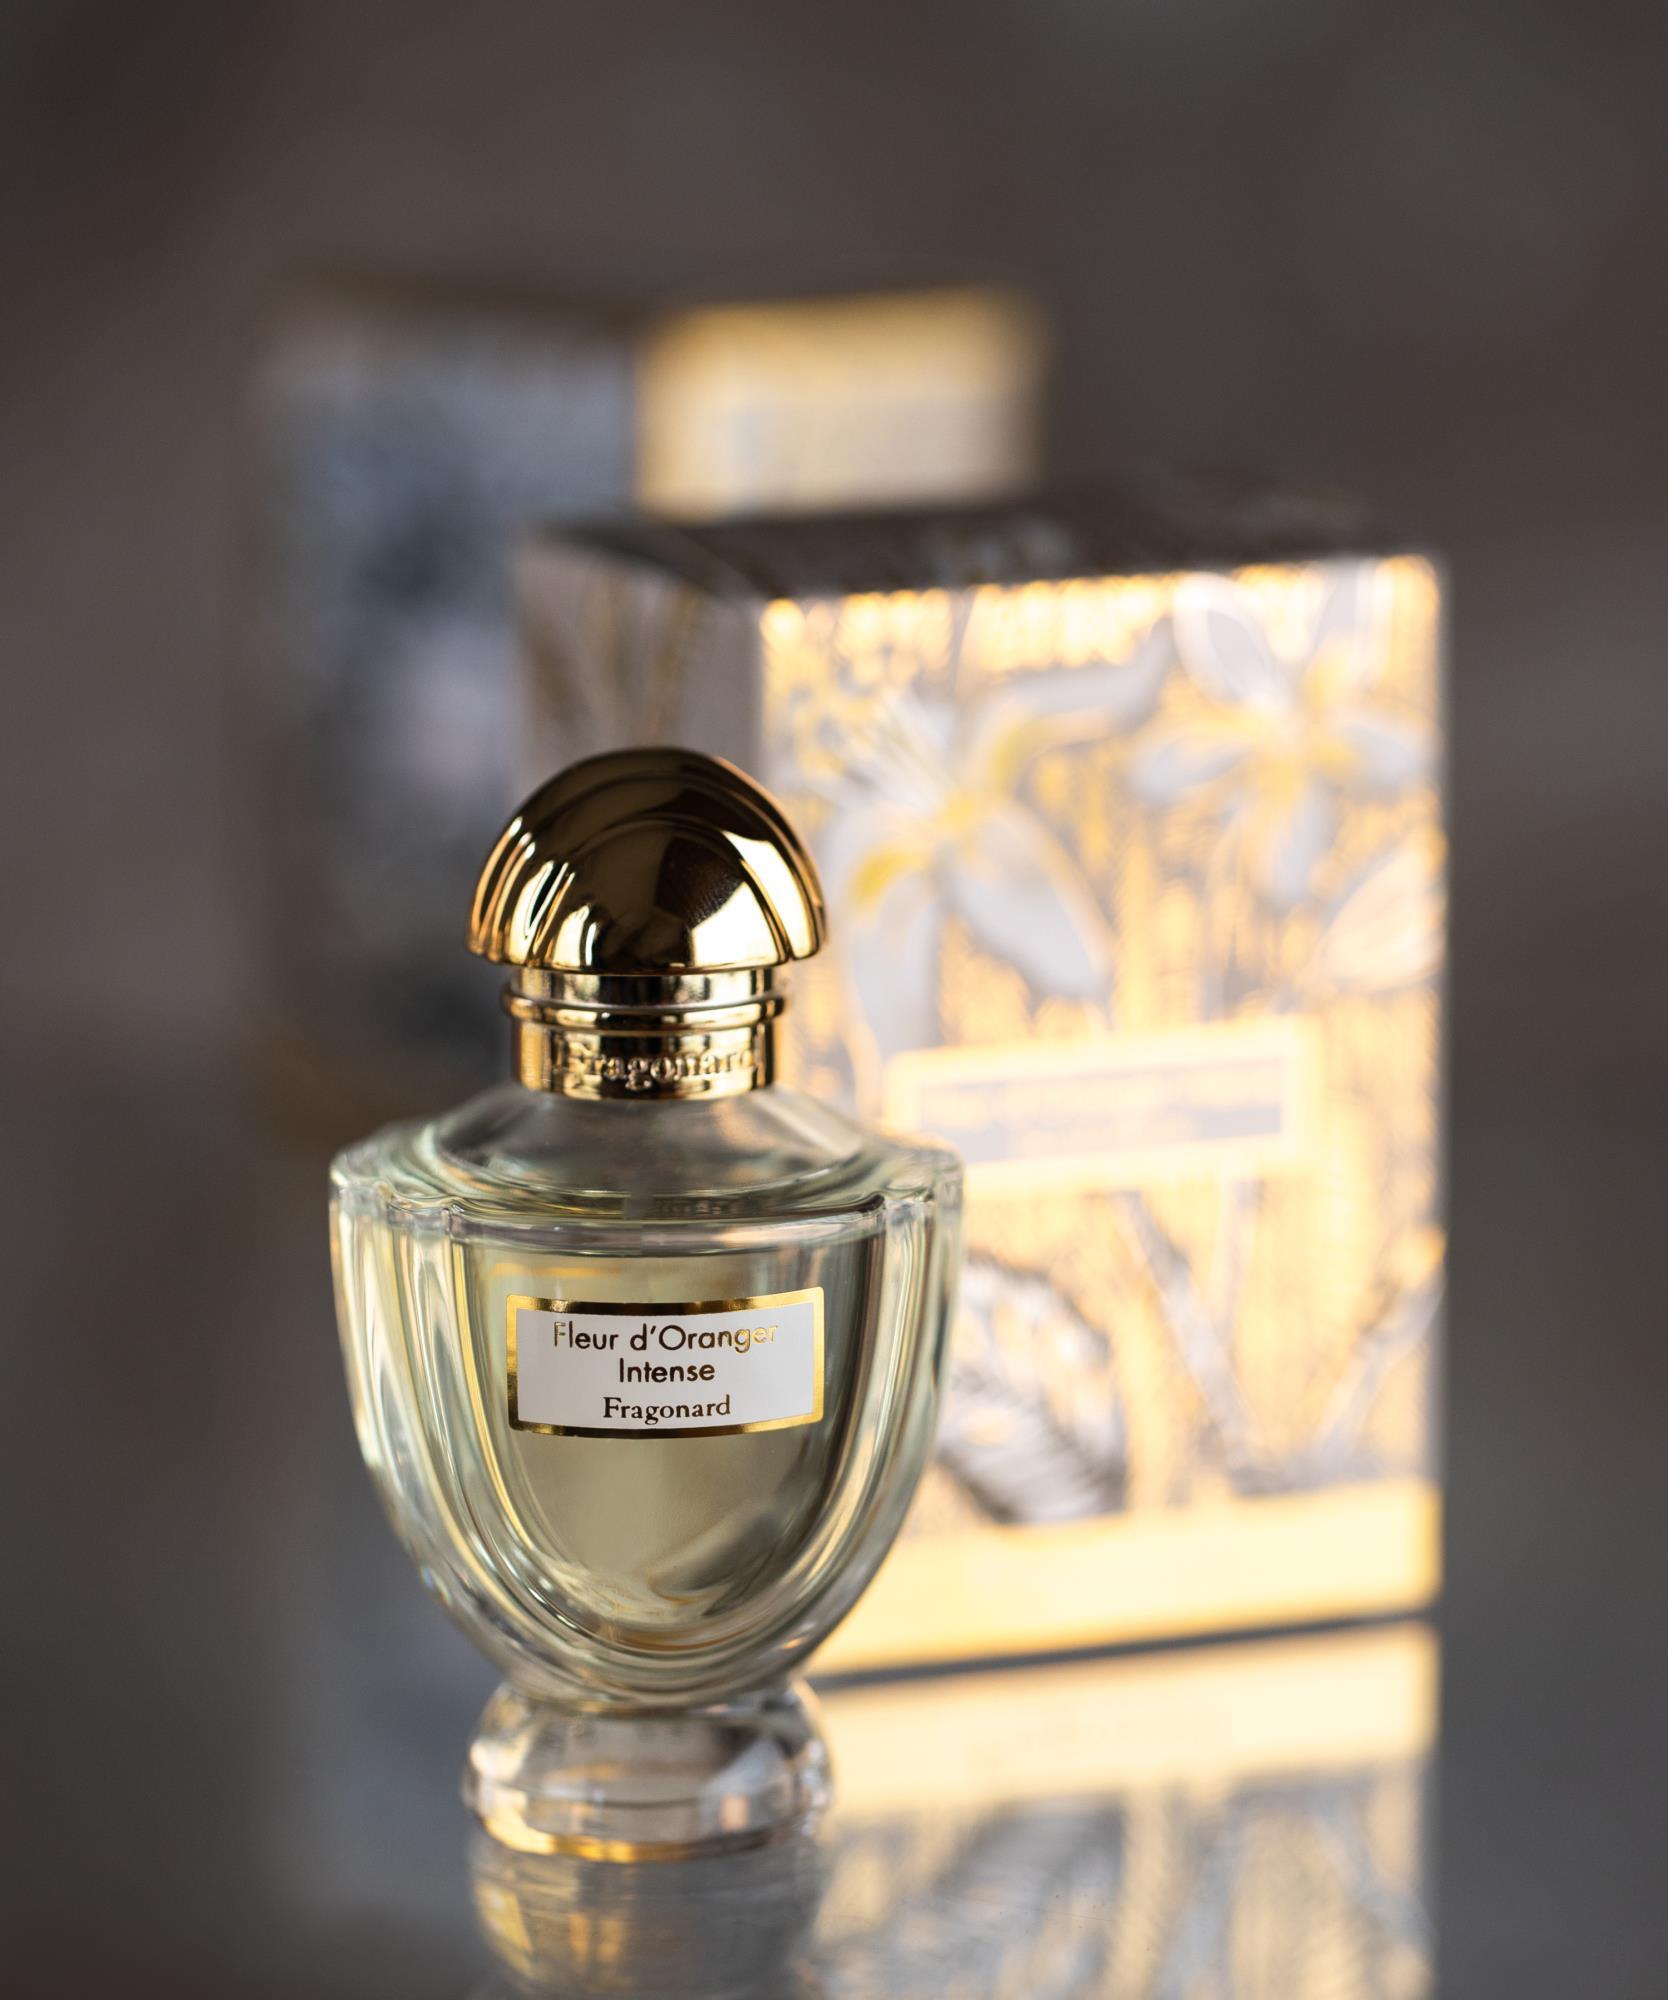 Fleur d Oranger Intense Eau de parfum Fragonard - $ 87.00